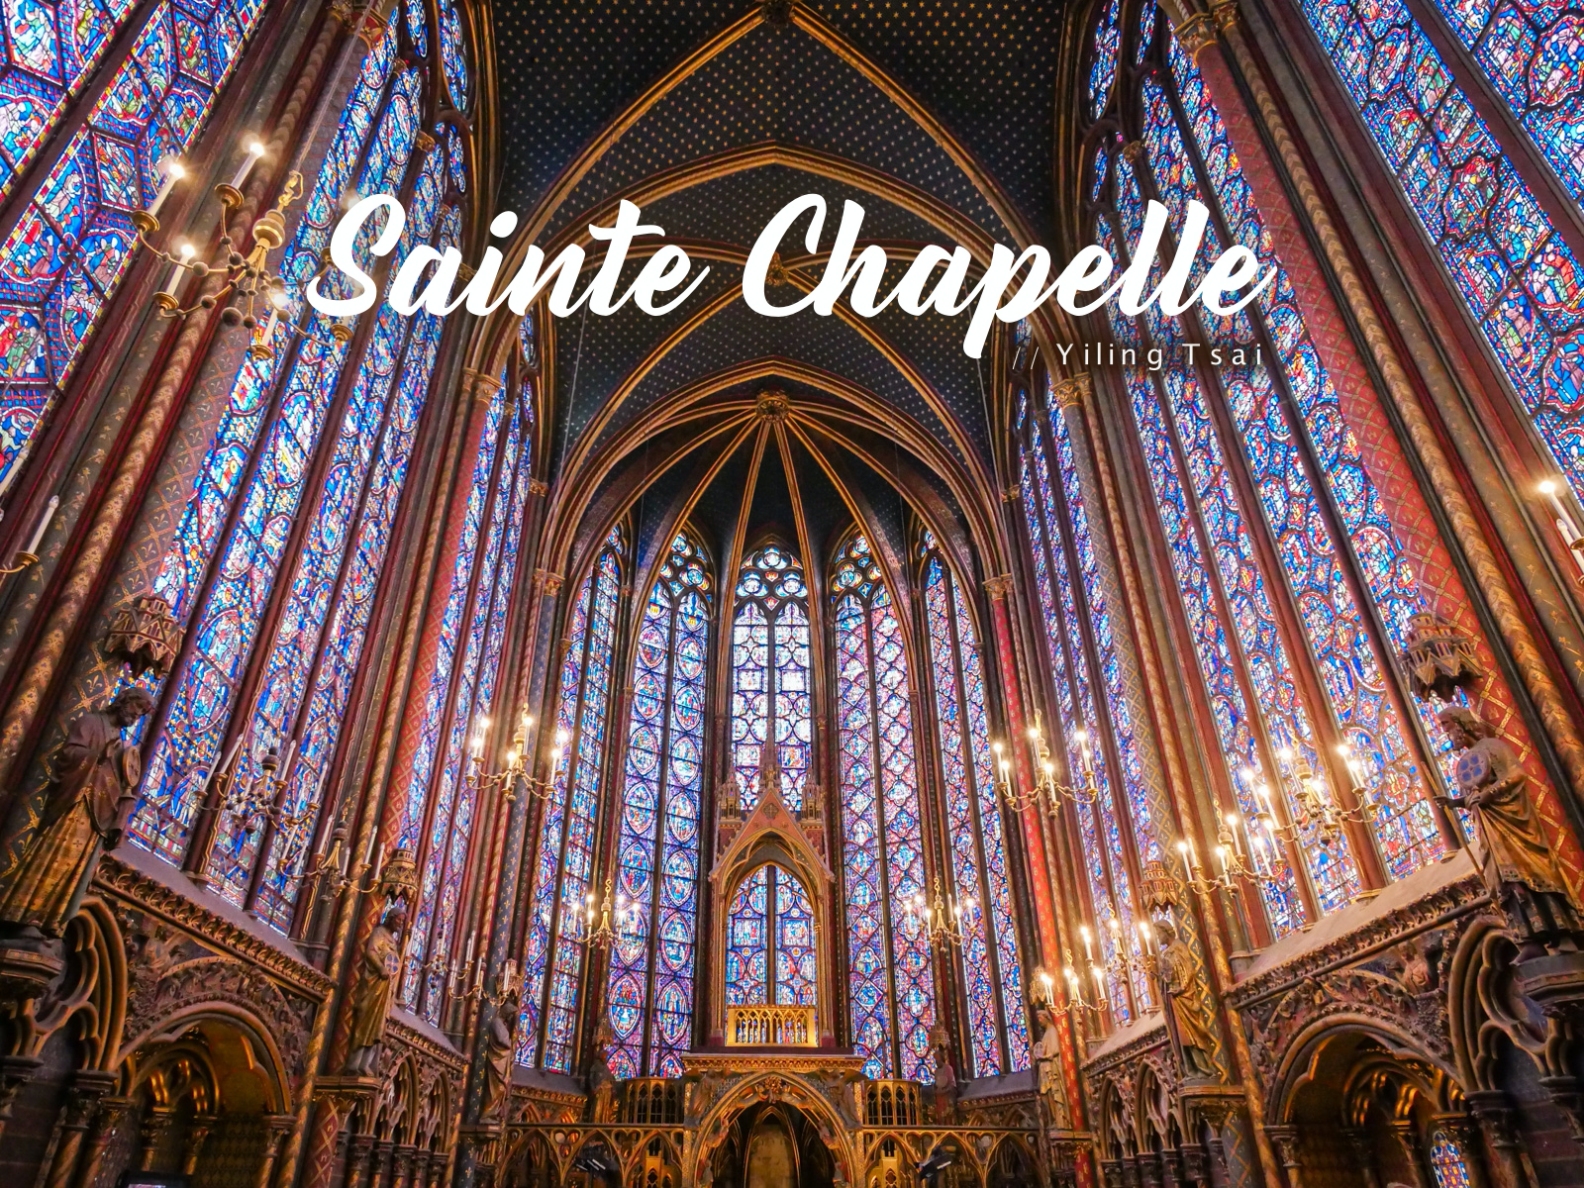 法國巴黎景點 聖徒禮拜堂 Sainte Chapelle 瑰麗璀璨哥德式彩繪玻璃